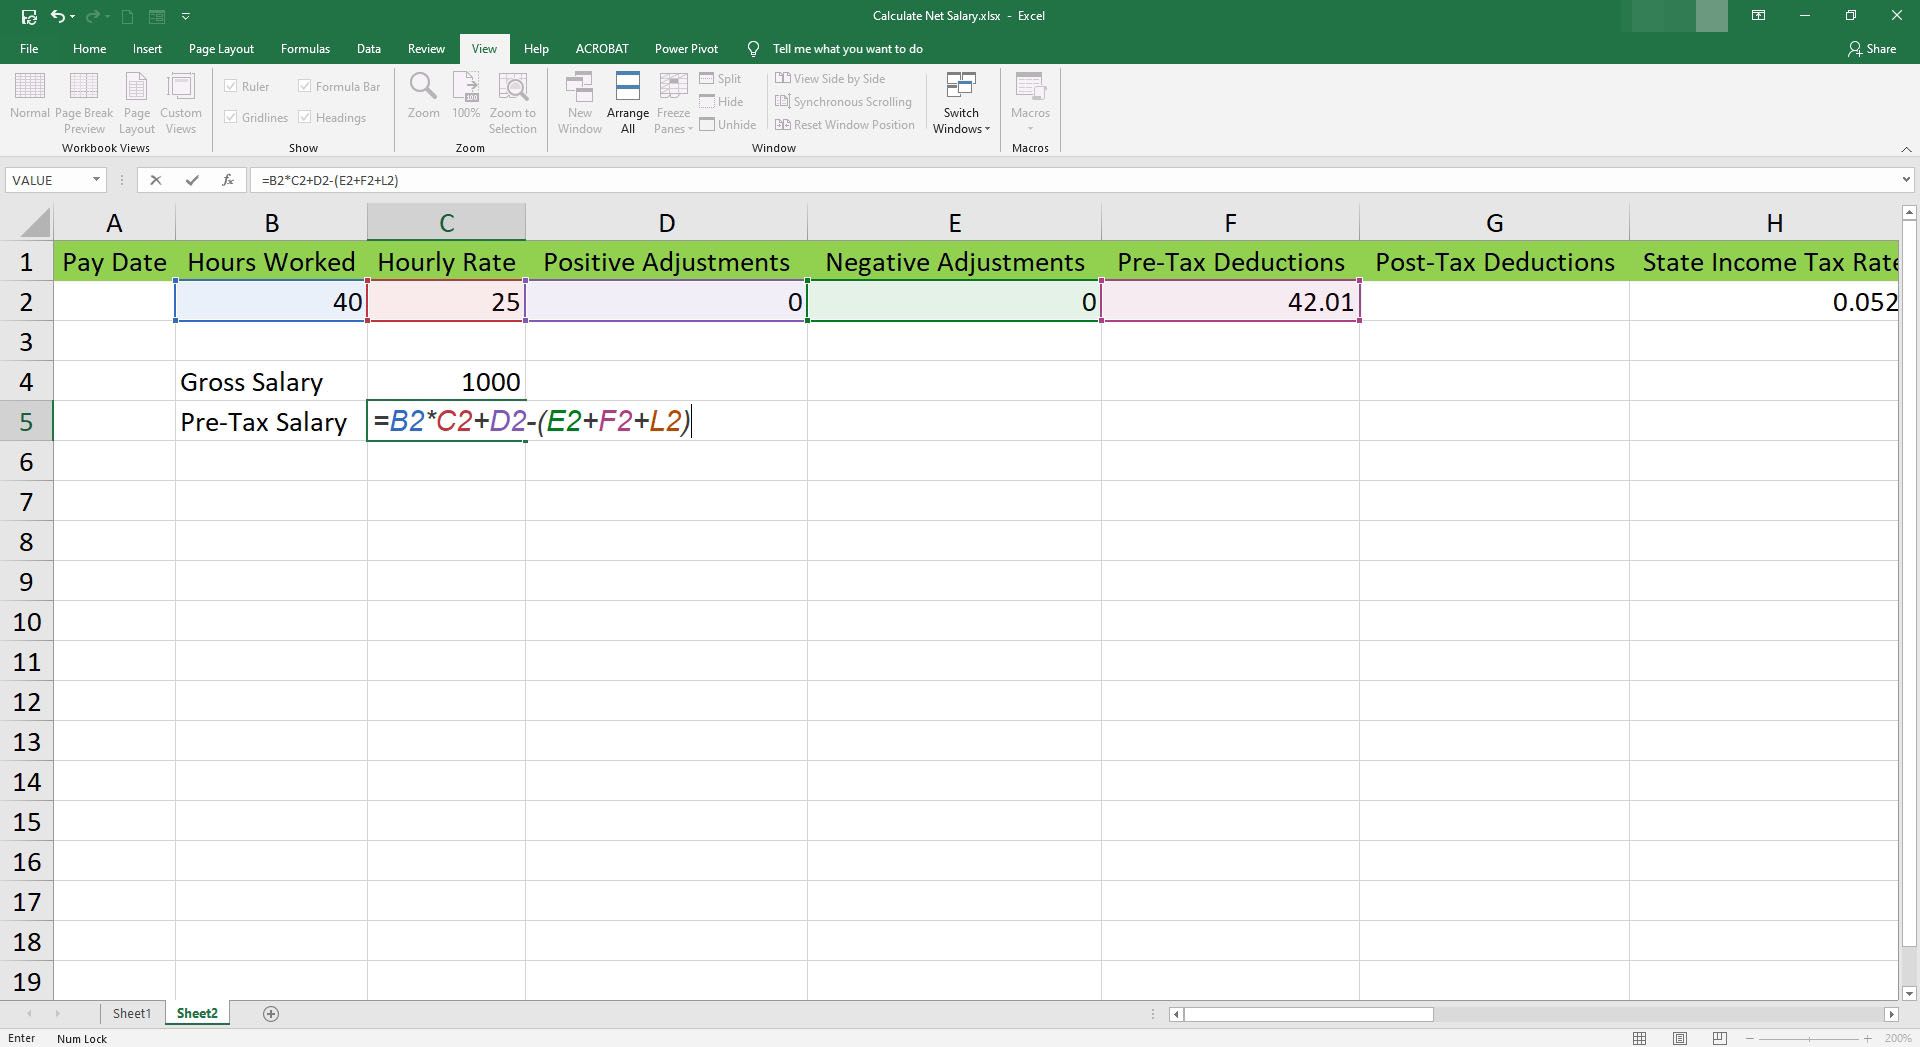 Ange löneformel före skatt i en cell i Microsoft Excel.